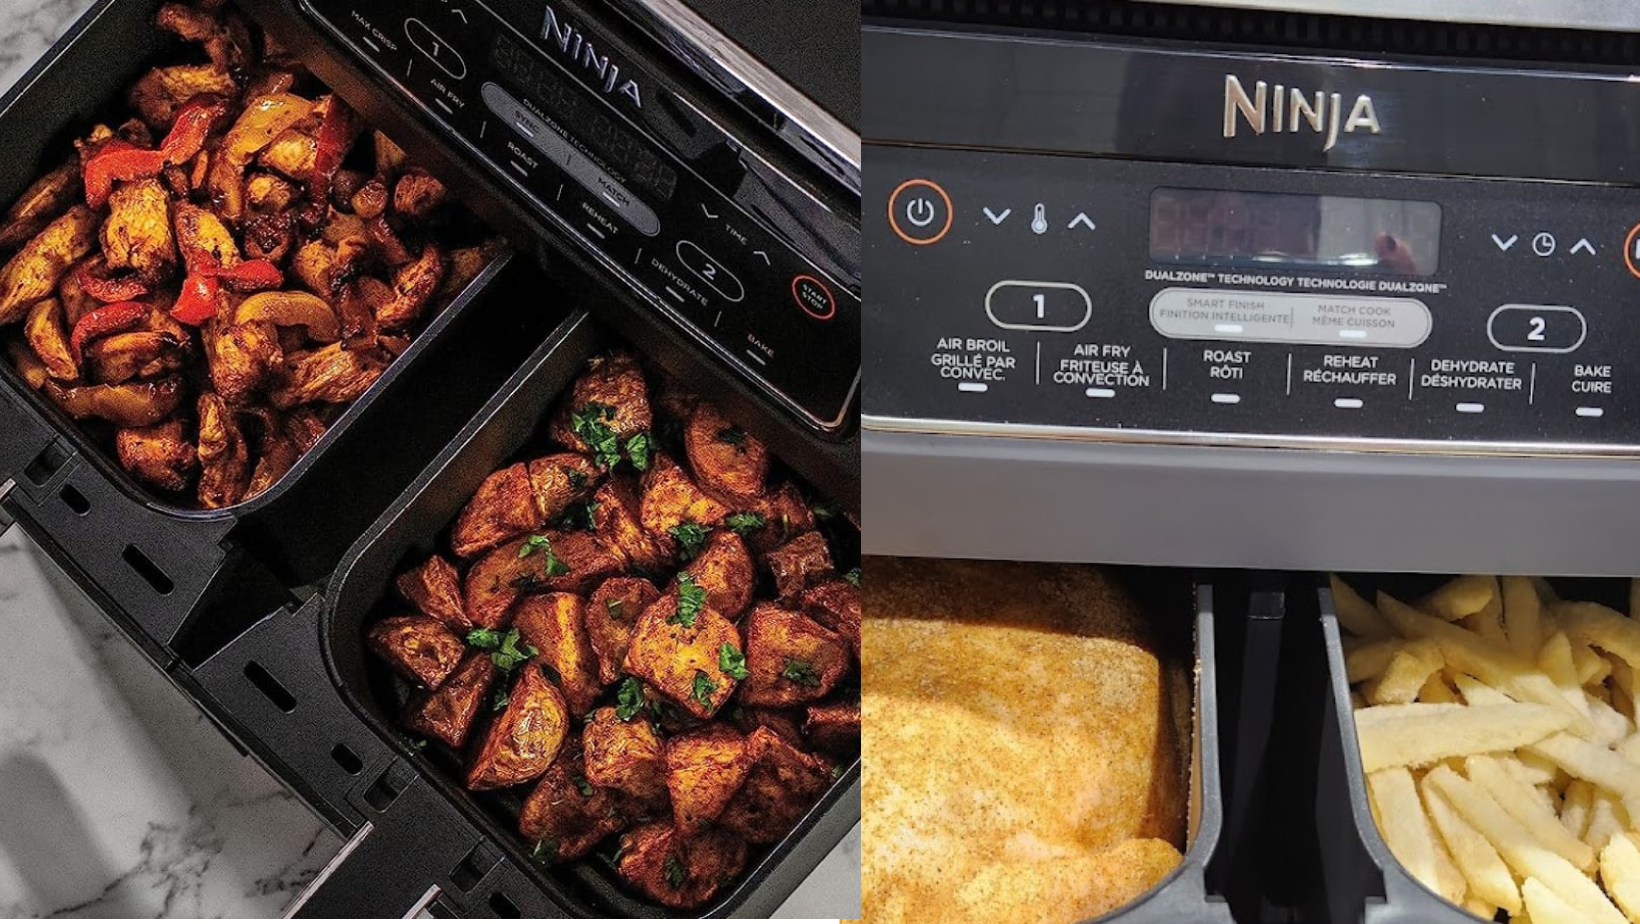 Recette Air Fryer Ninja: Explorez des recettes créatives et délicieuses pour votre friteuse Ninja Air Fryer